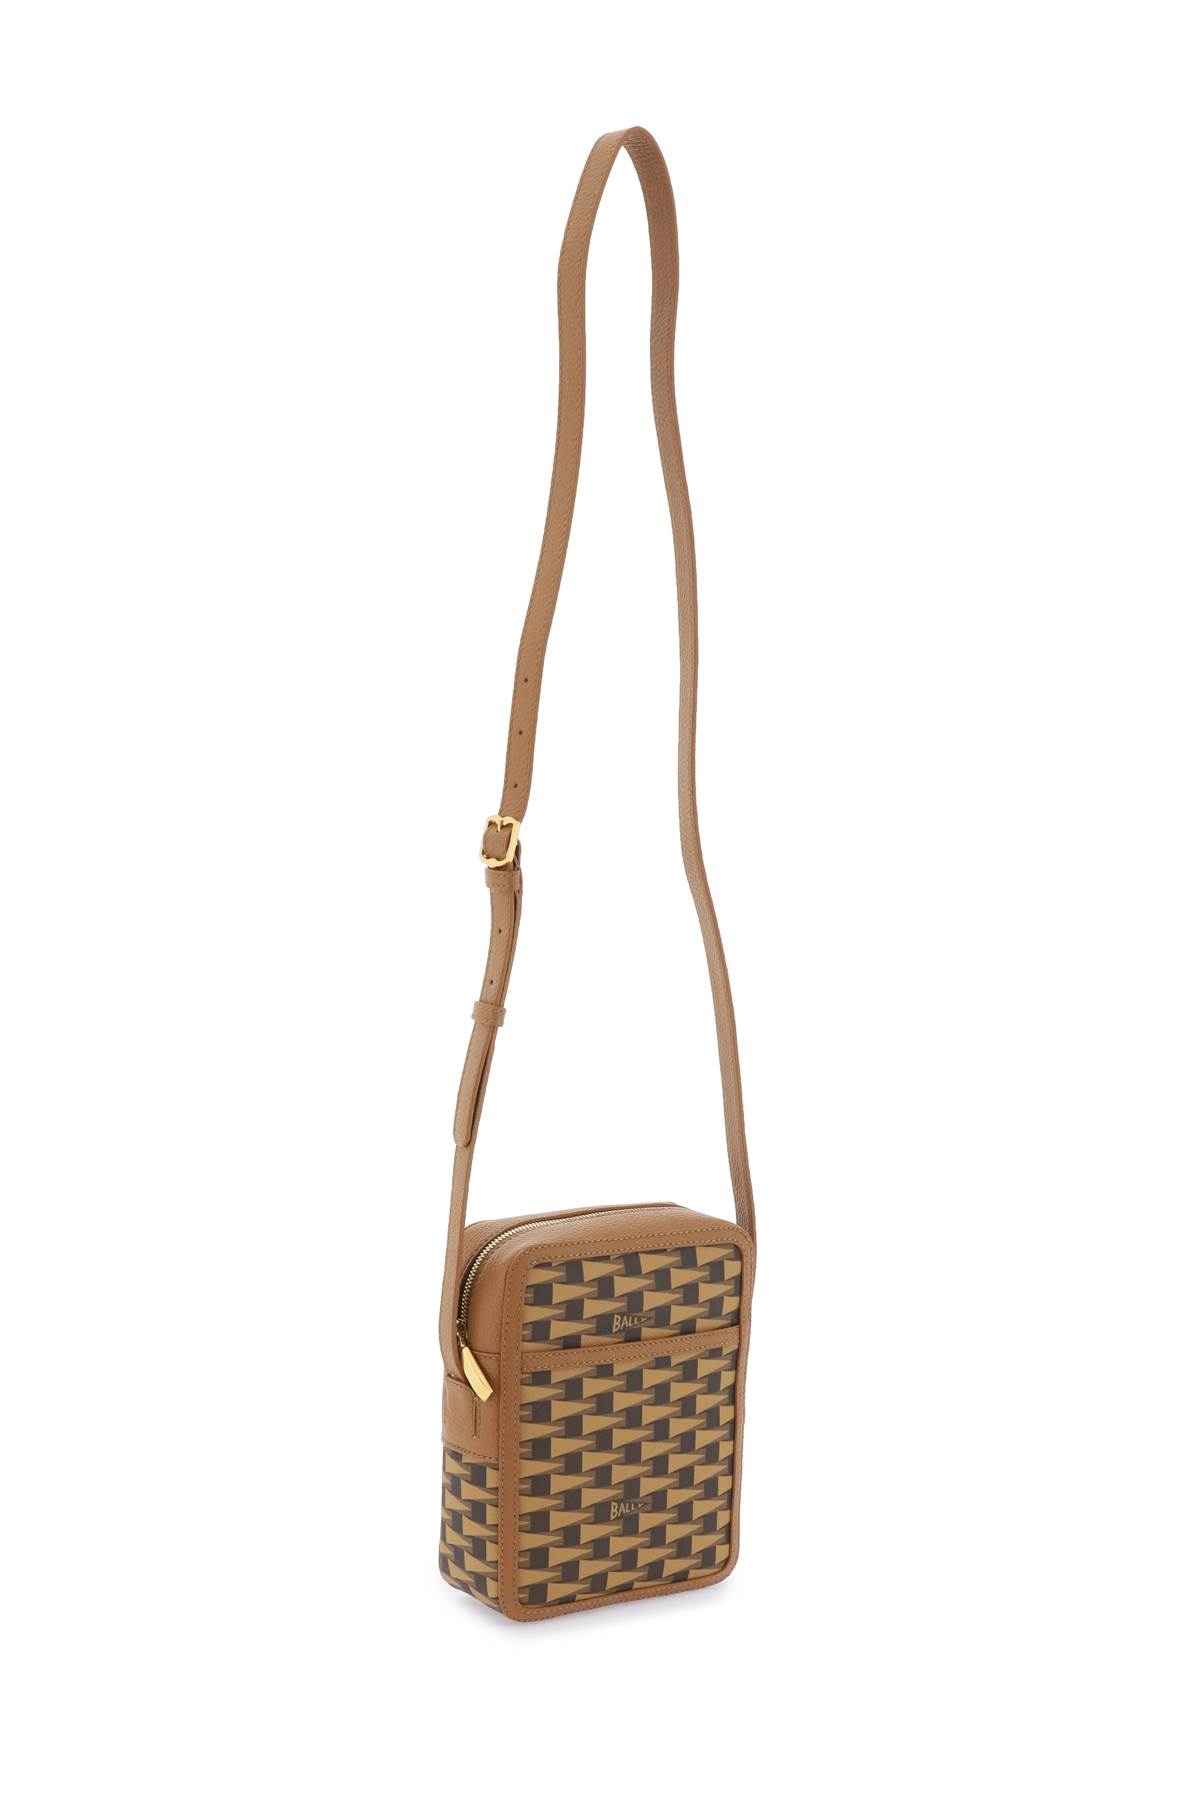 Shop Bally Pennant Crossbody Bag In Multideserto Oro (brown)